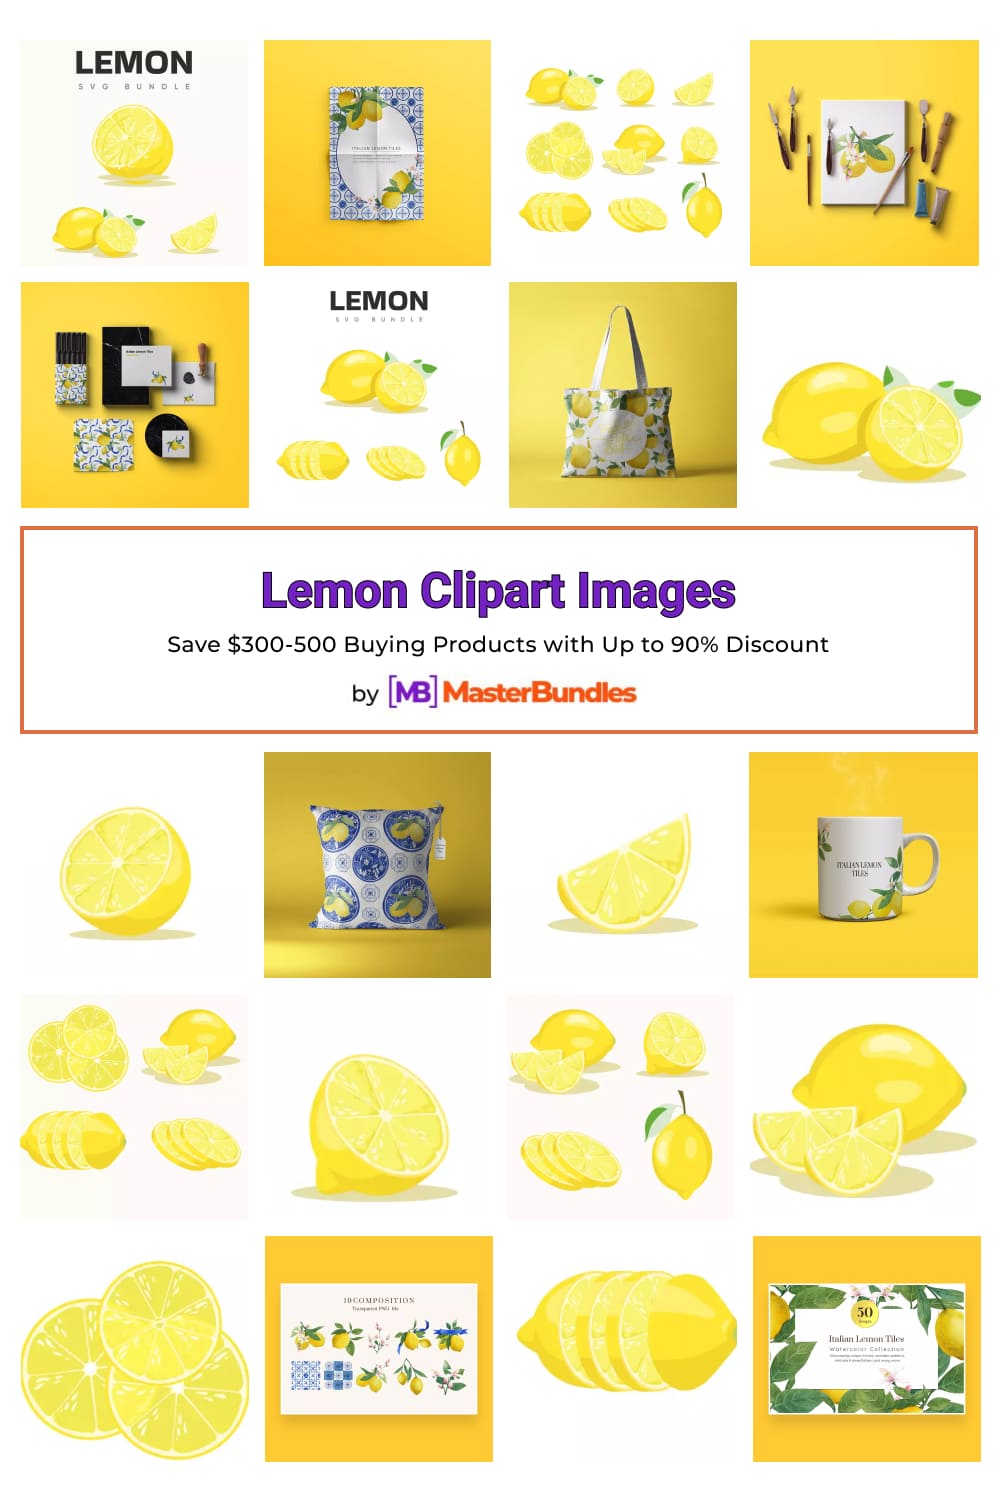 Lemon Clipart Images Pinterest image.